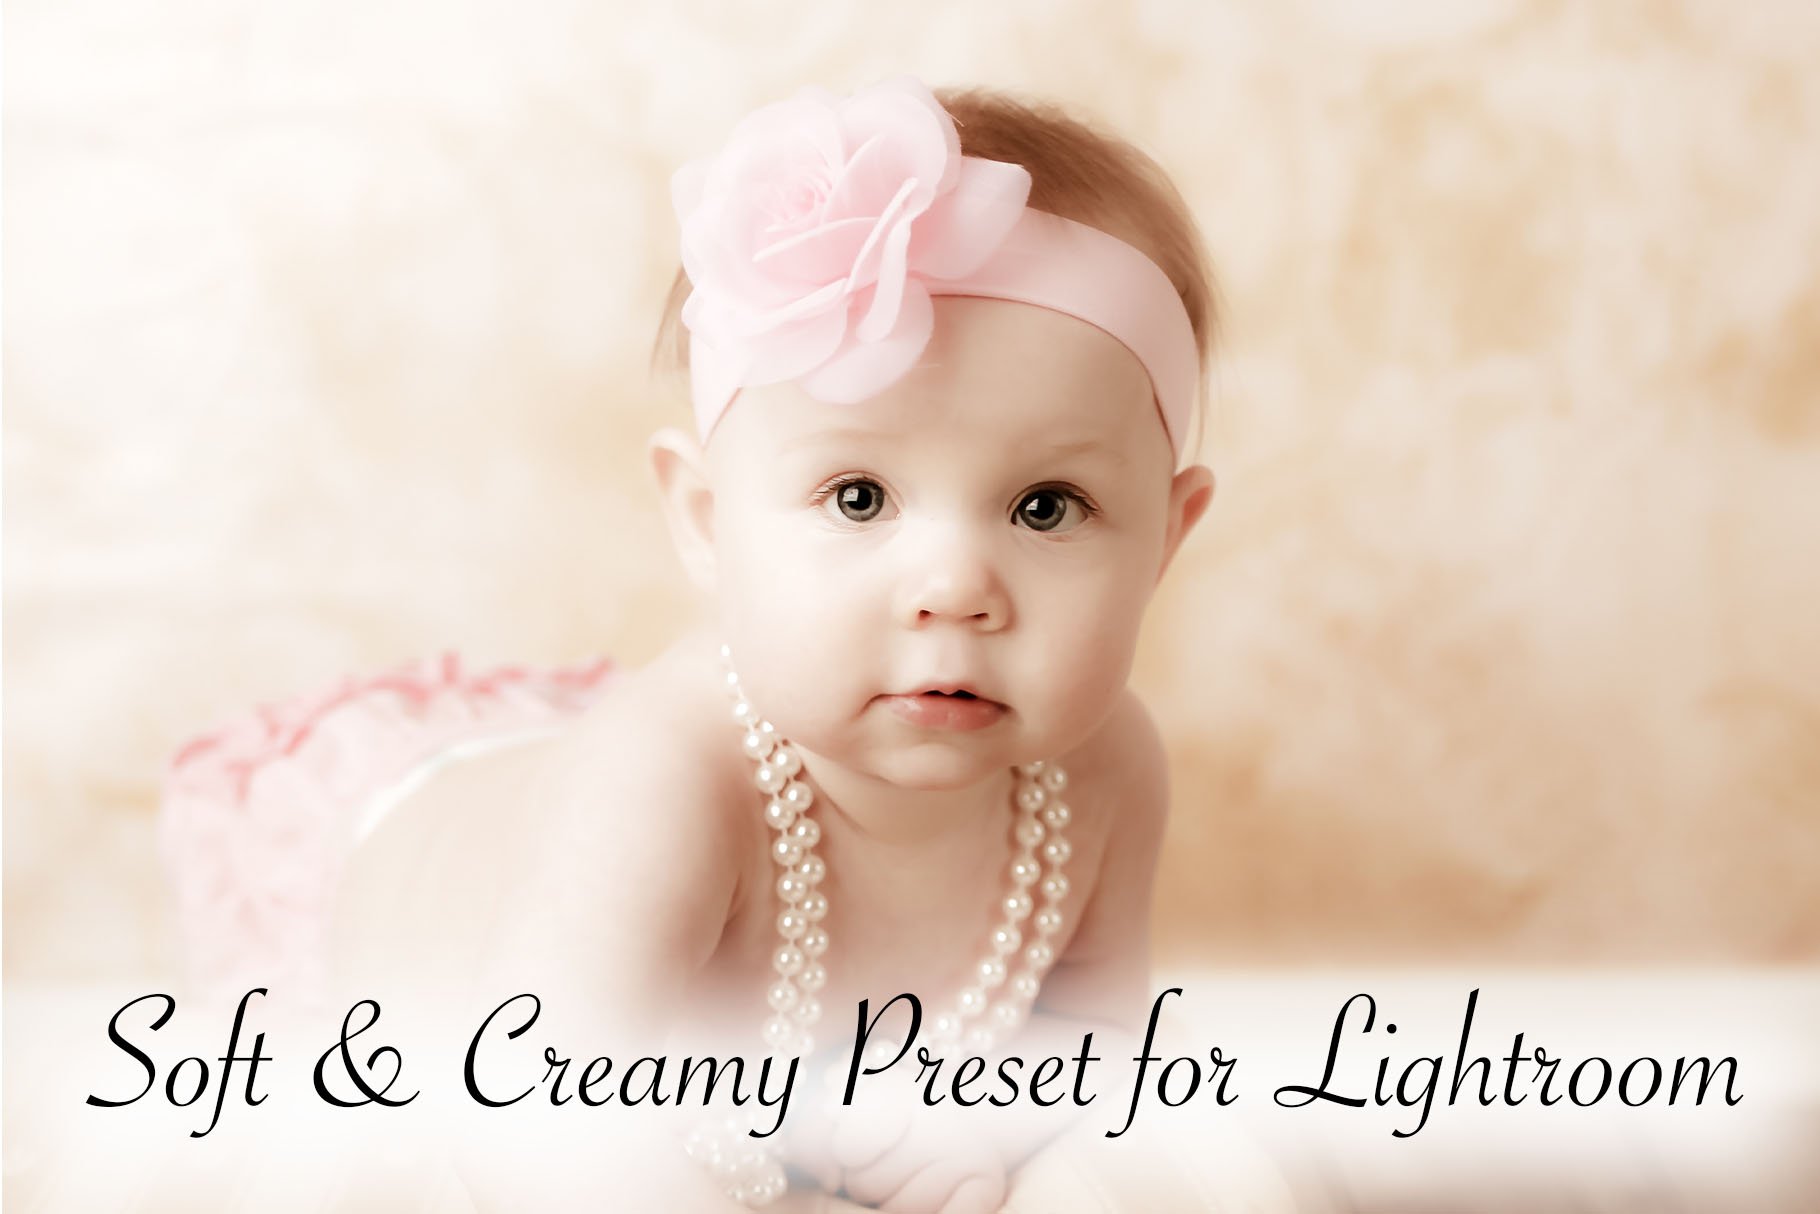 Lightroom Preset Soft Creamcover image.